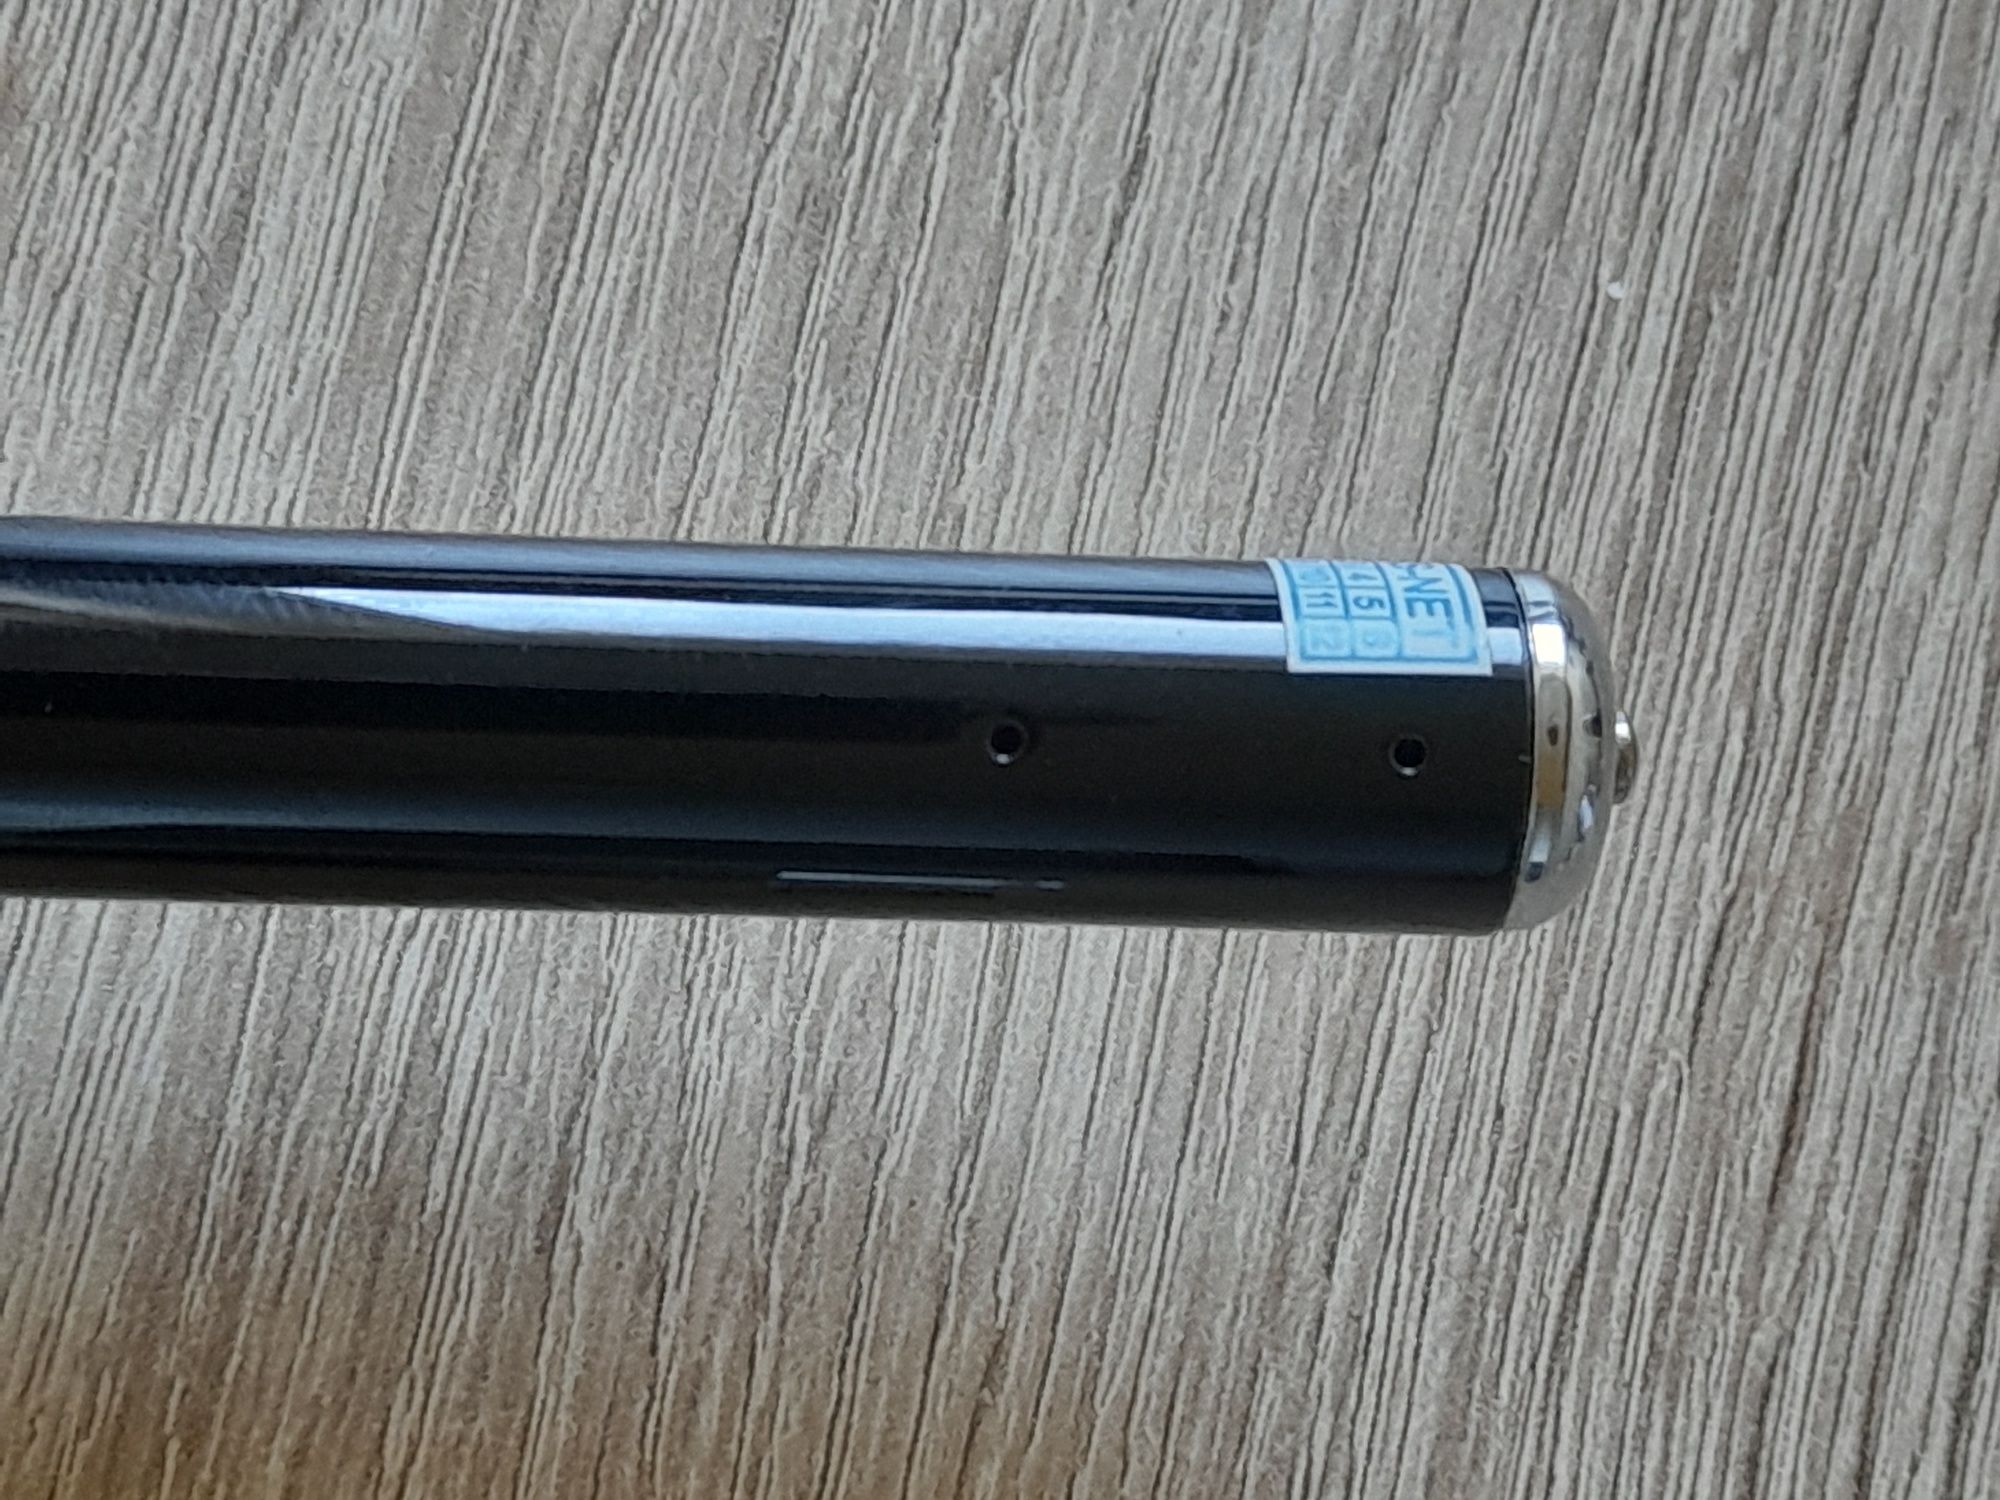 Mini kamera ukryta w długopisie